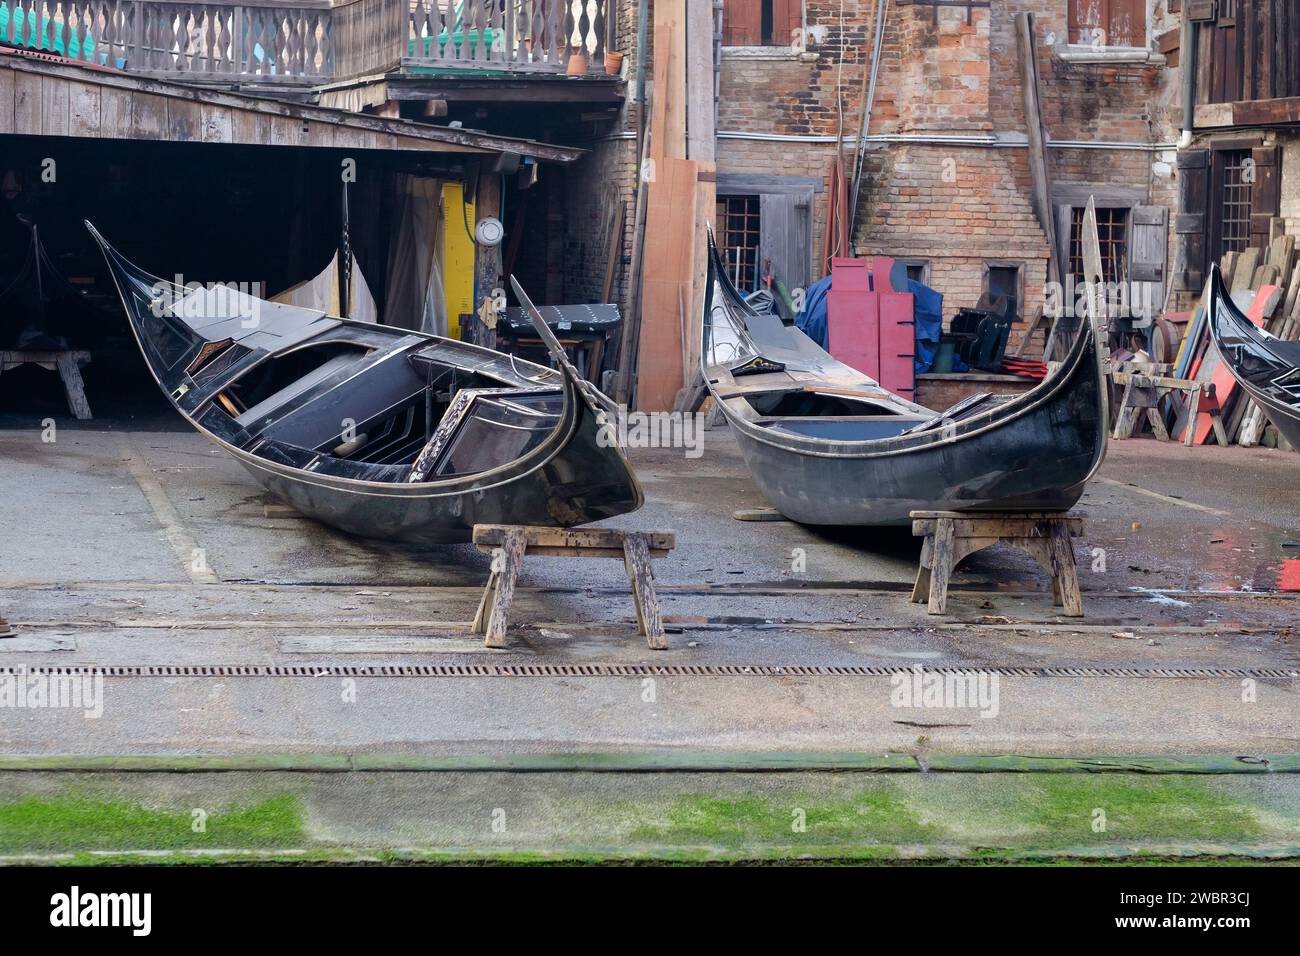 Die Gondelwerft (Squero San Tovaso), auf der Boote hergestellt und repariert werden, Venedig, Italien Stockfoto